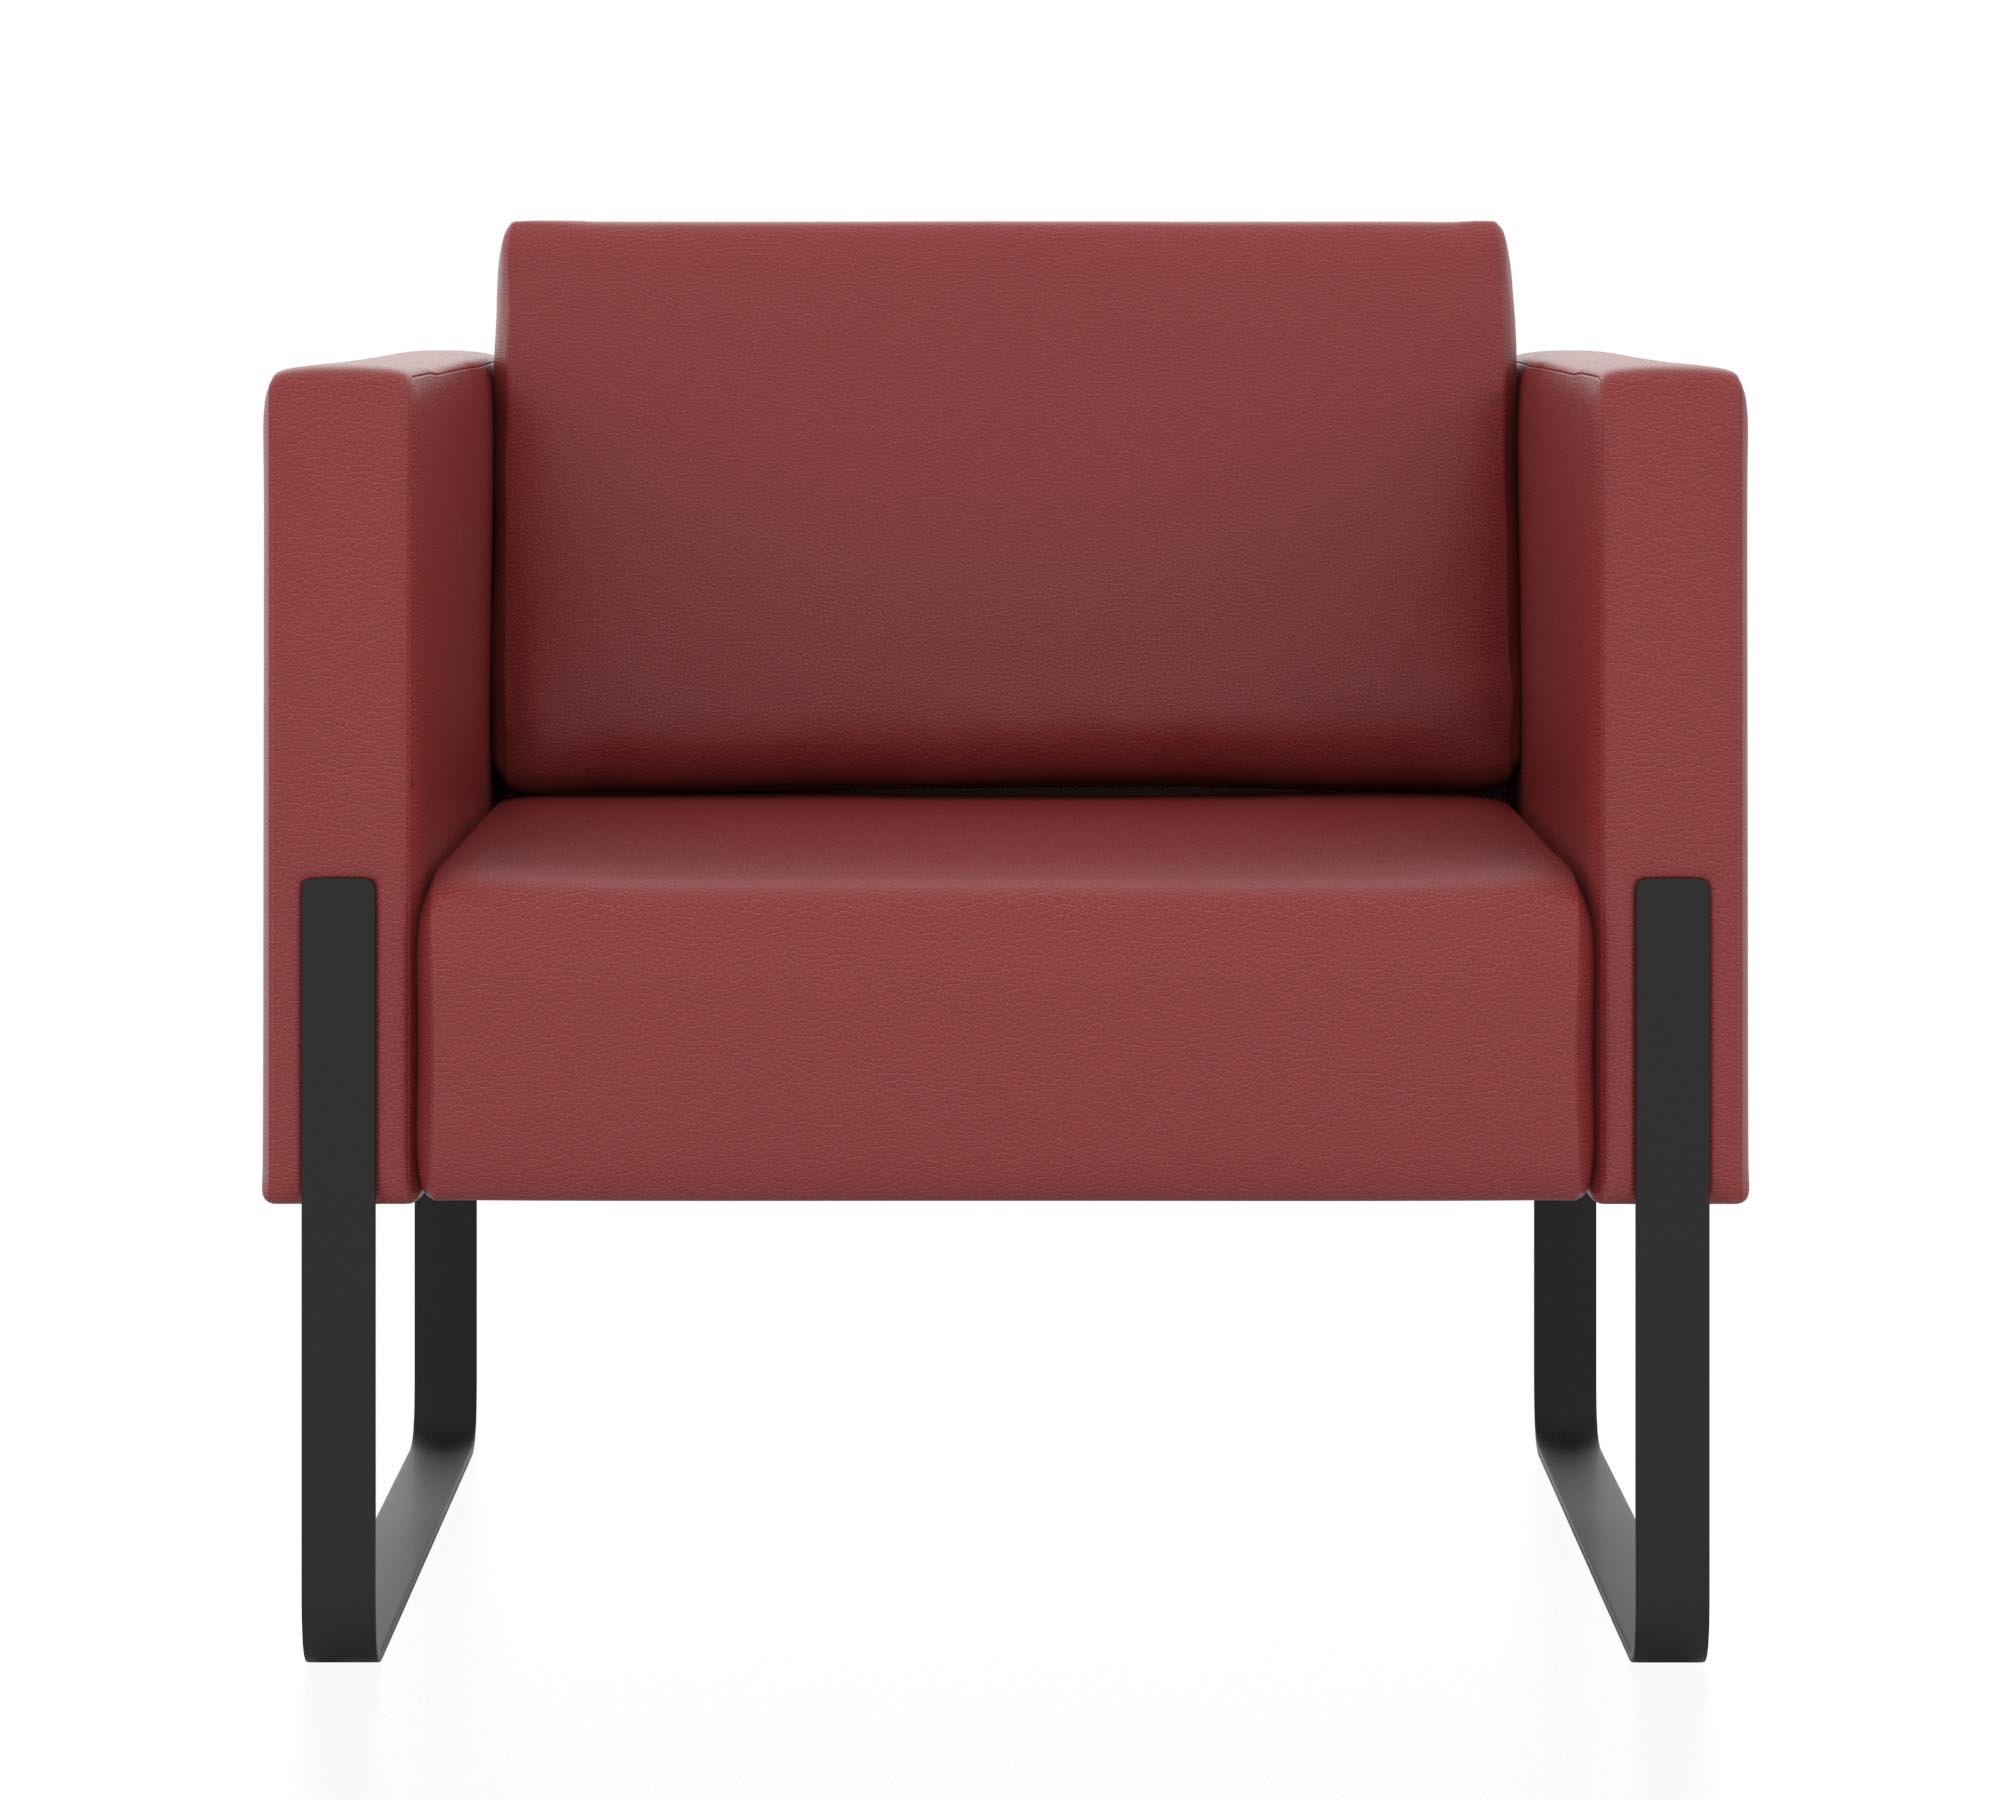 Кресло. Обивка кожзам (P2 EUROLINE 960). Цвет красный.